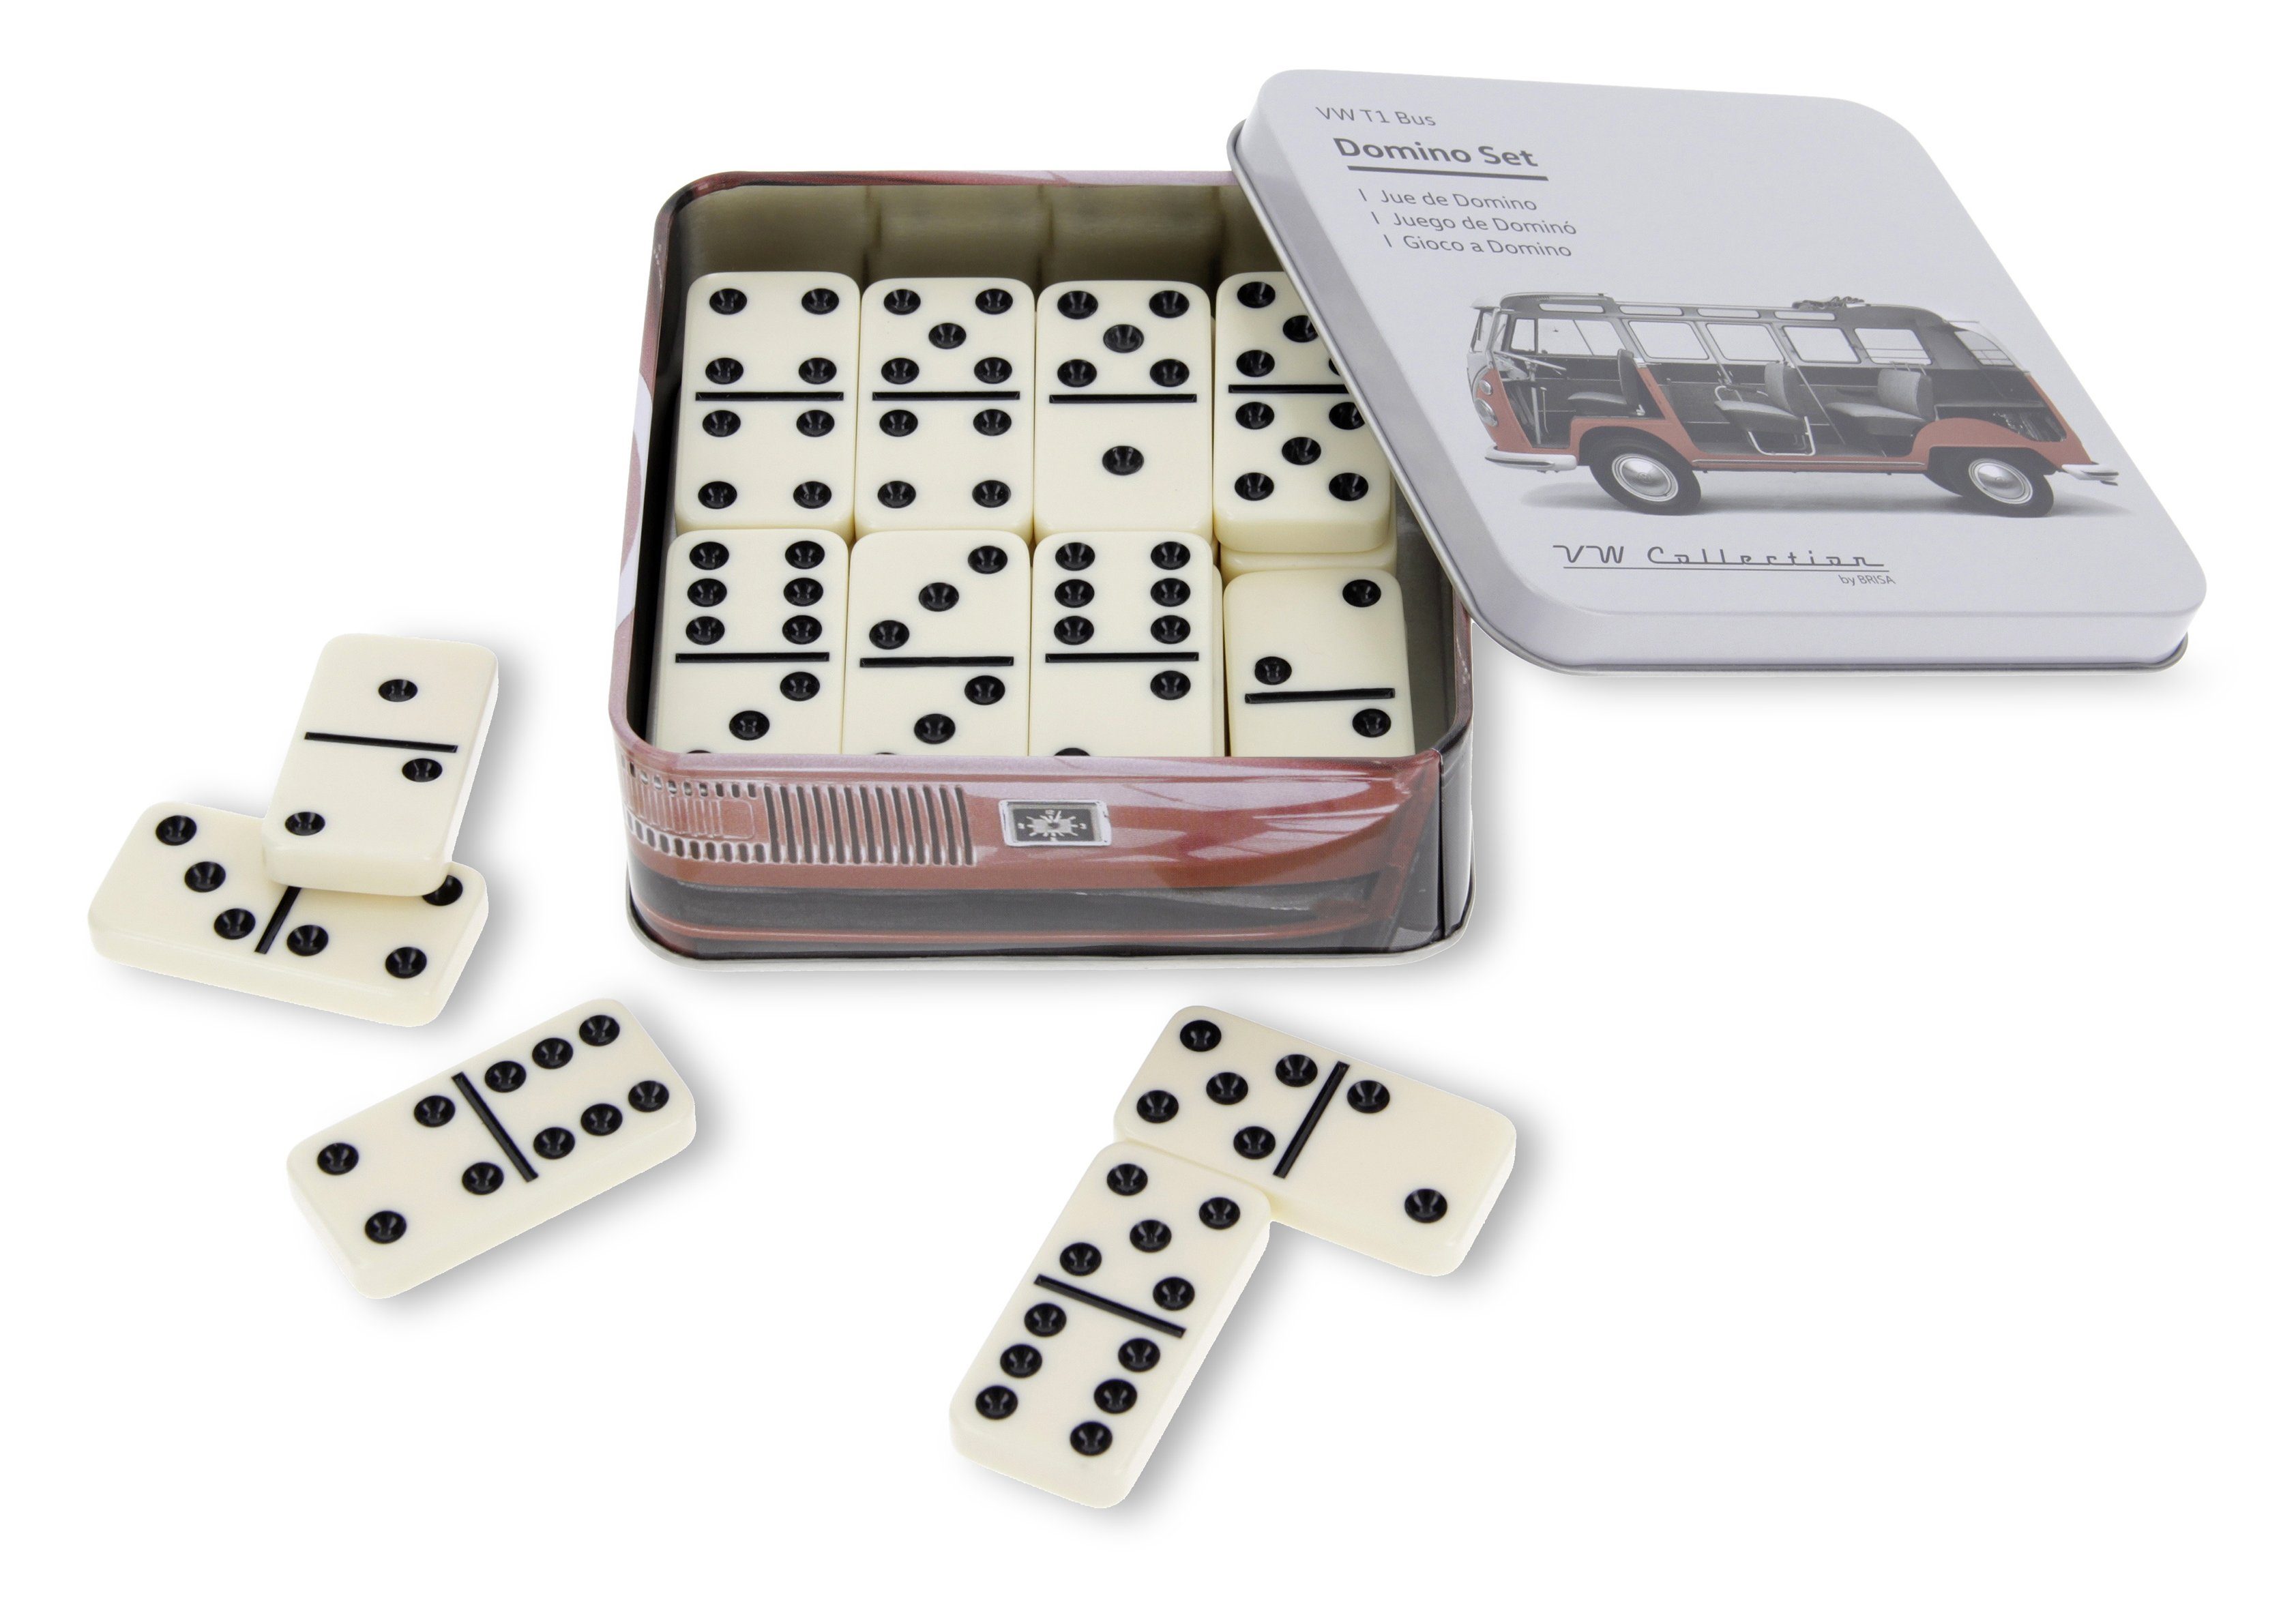 Bulli Spielset by in Gesellschaftsspiel Metalldose, Bus Spielesammlung, T1 Volkswagen VW im BRISA Collection Motiv Familienspiel Domino